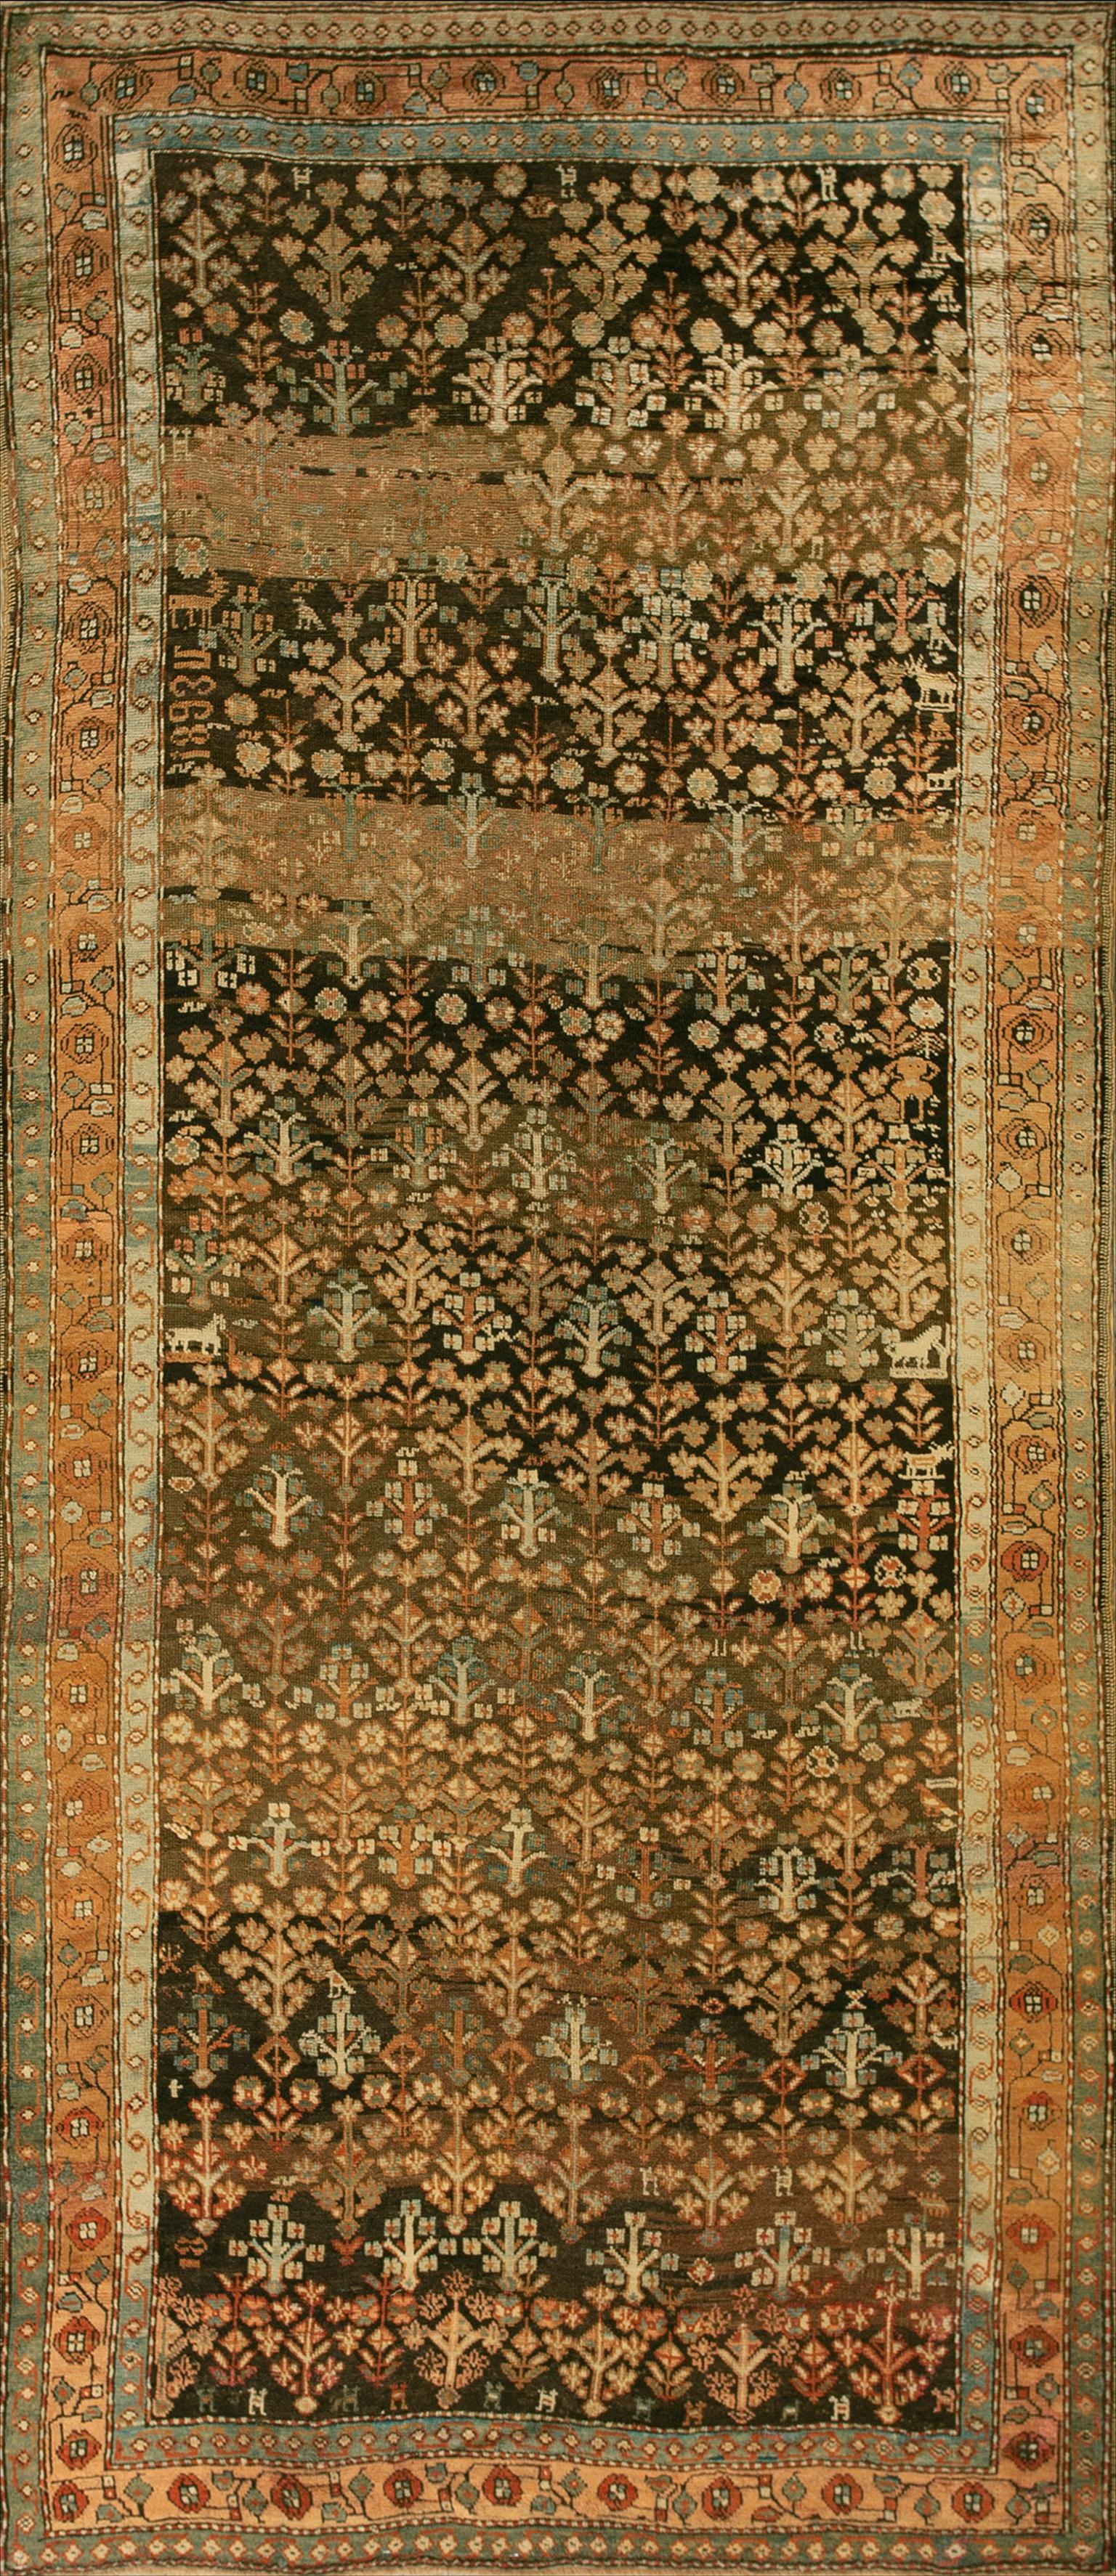 19th Century Caucasian Karabagh Shrub Carpet ( 4'6" x 10"9" - 137 x 328 )